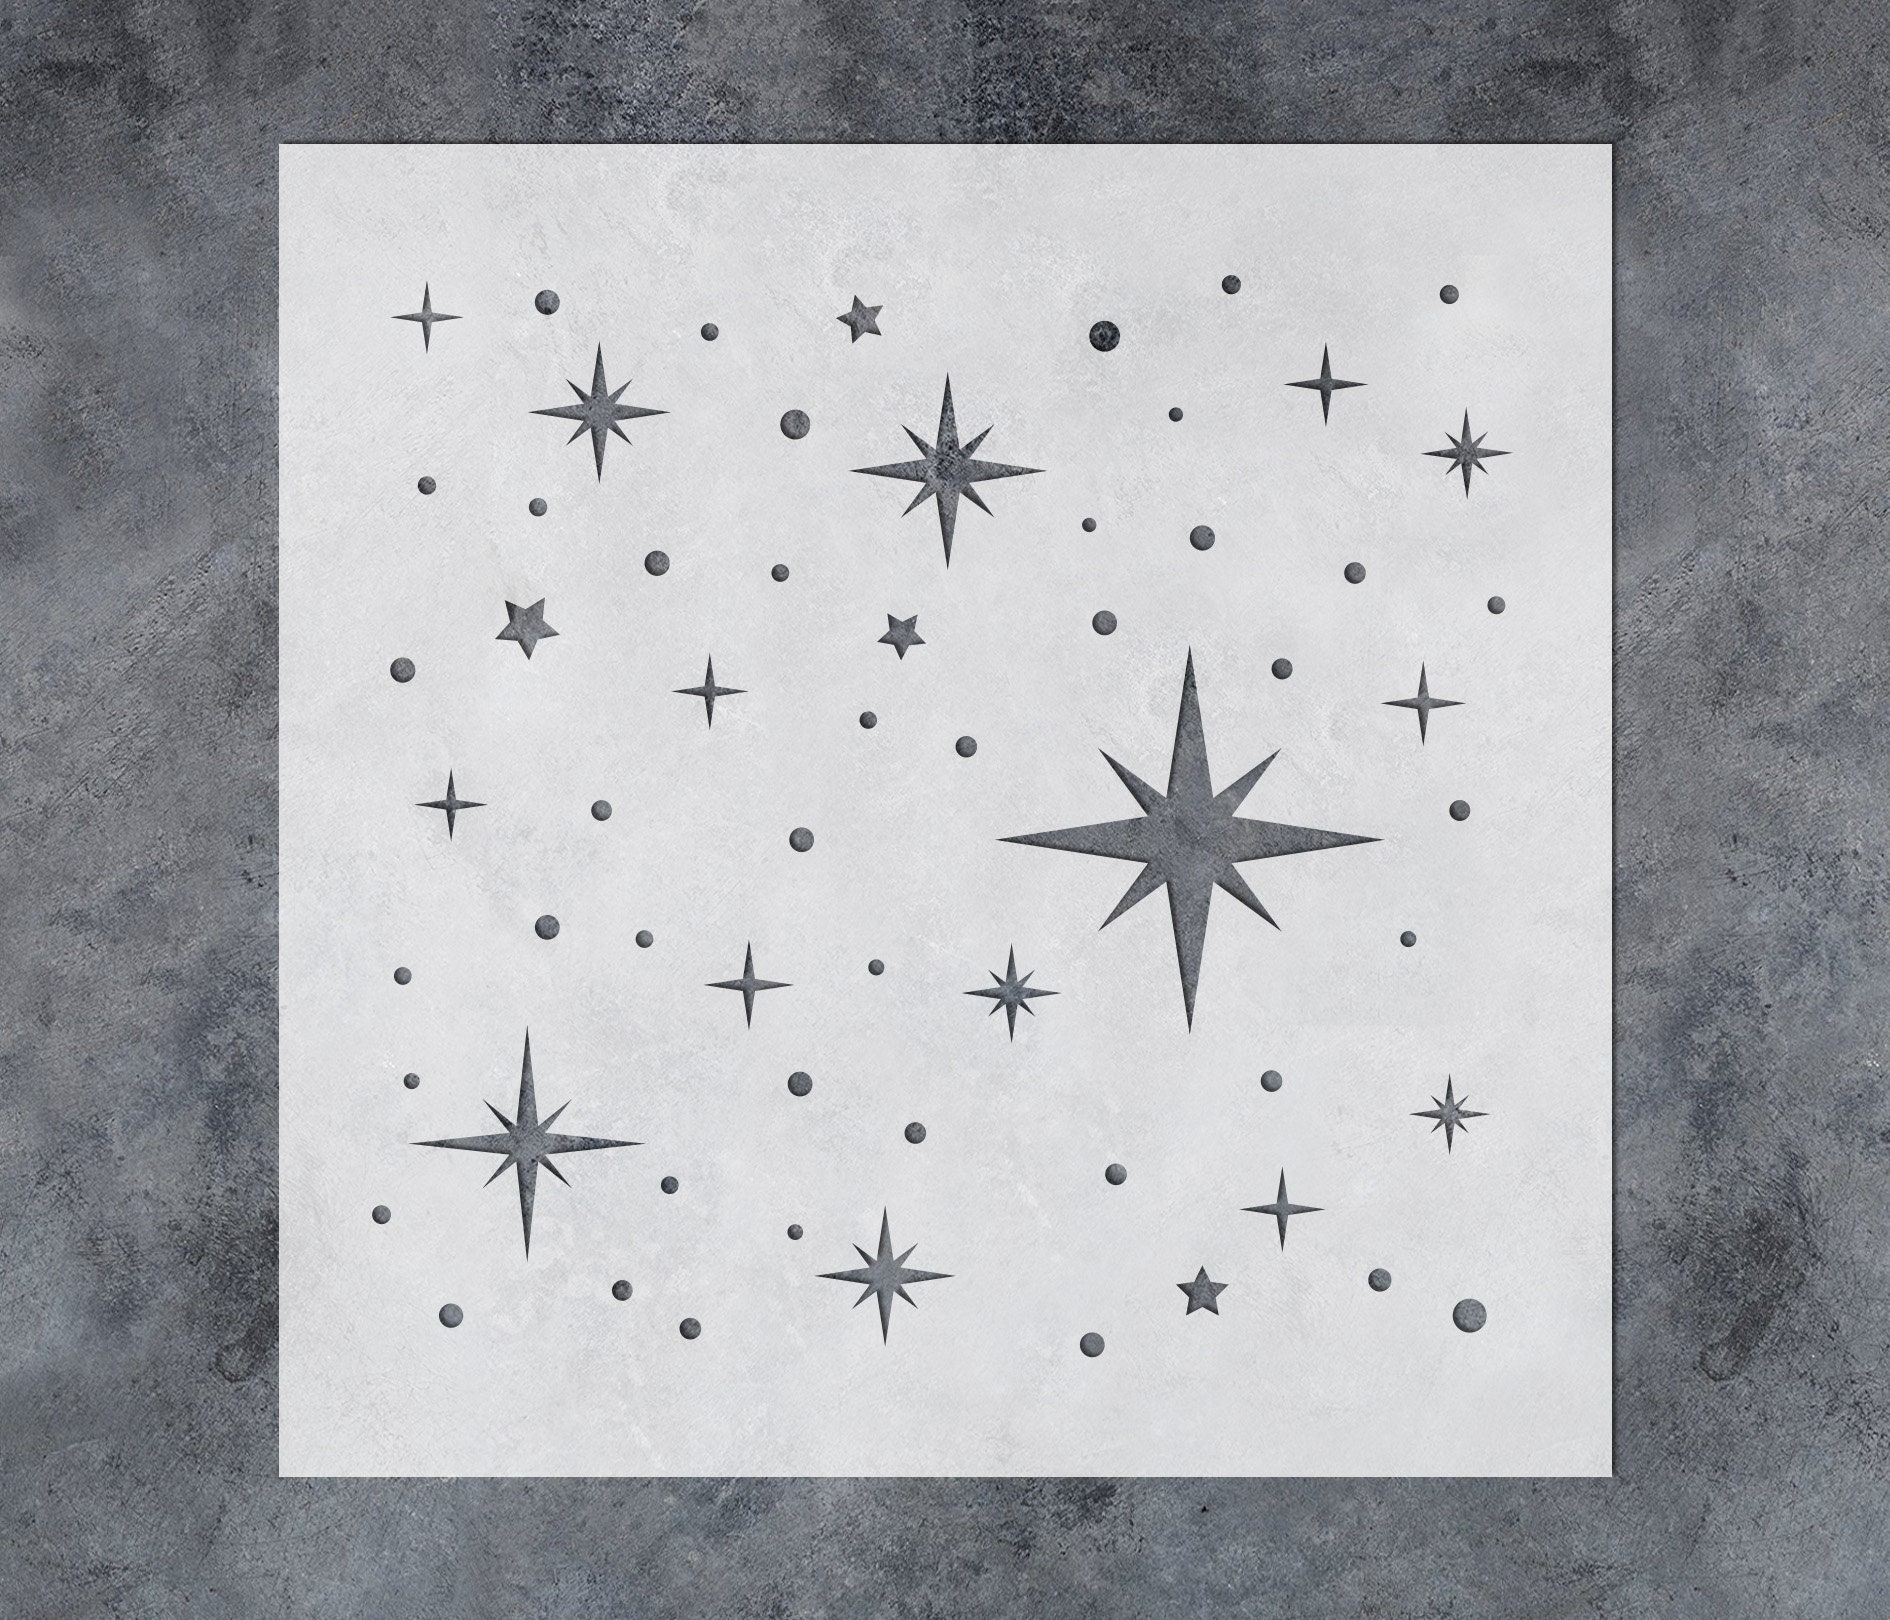 Star Wall Stencil Kit  Star Stencils for Painting Walls – My Wonderful  Walls